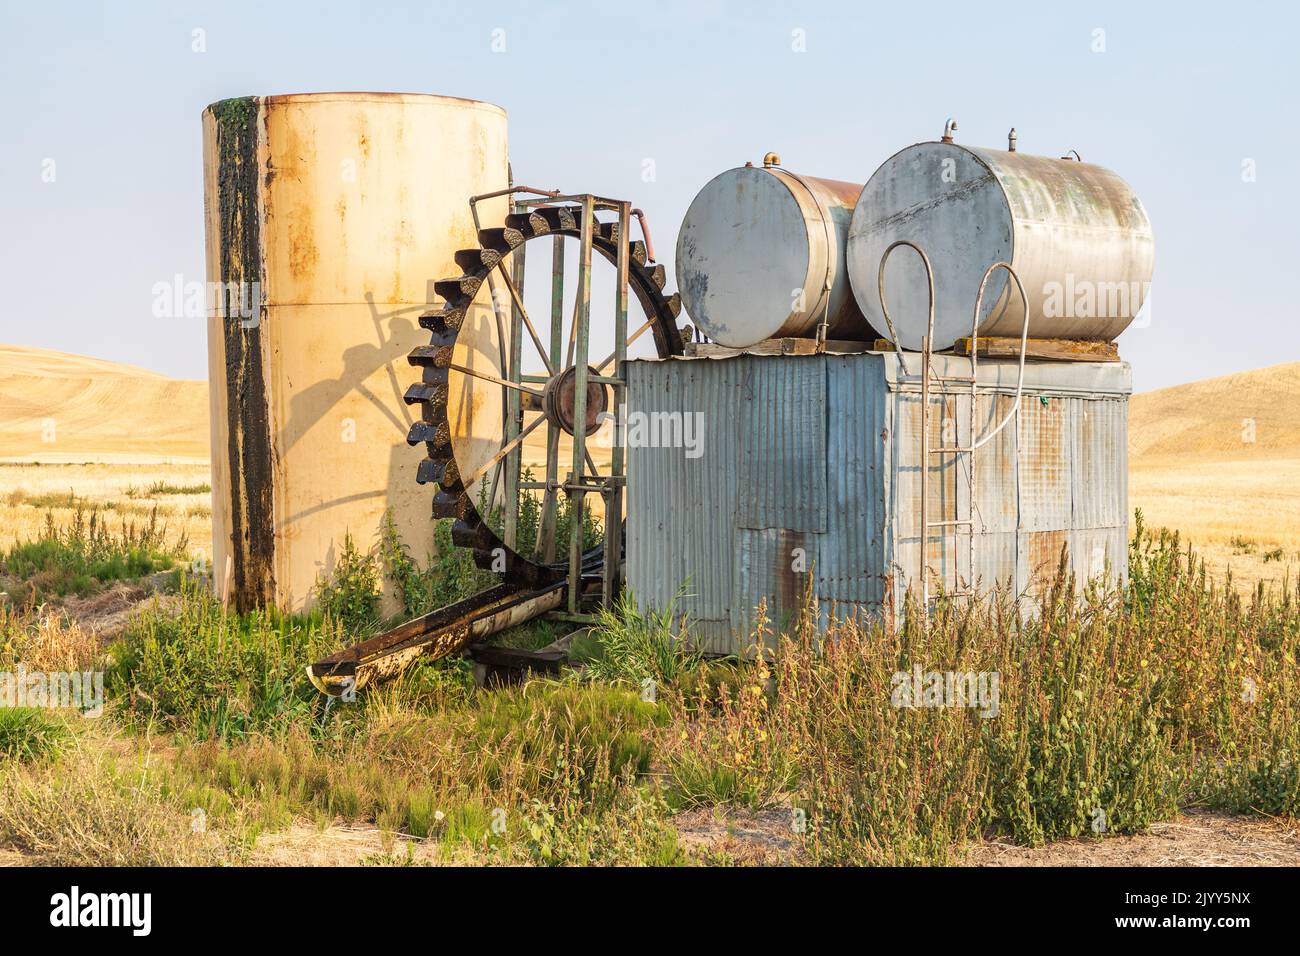 Stati Uniti, Washington state, Whitman County. Palouse. Colton. Una vecchia ruota ad acqua e altre attrezzature. Foto Stock